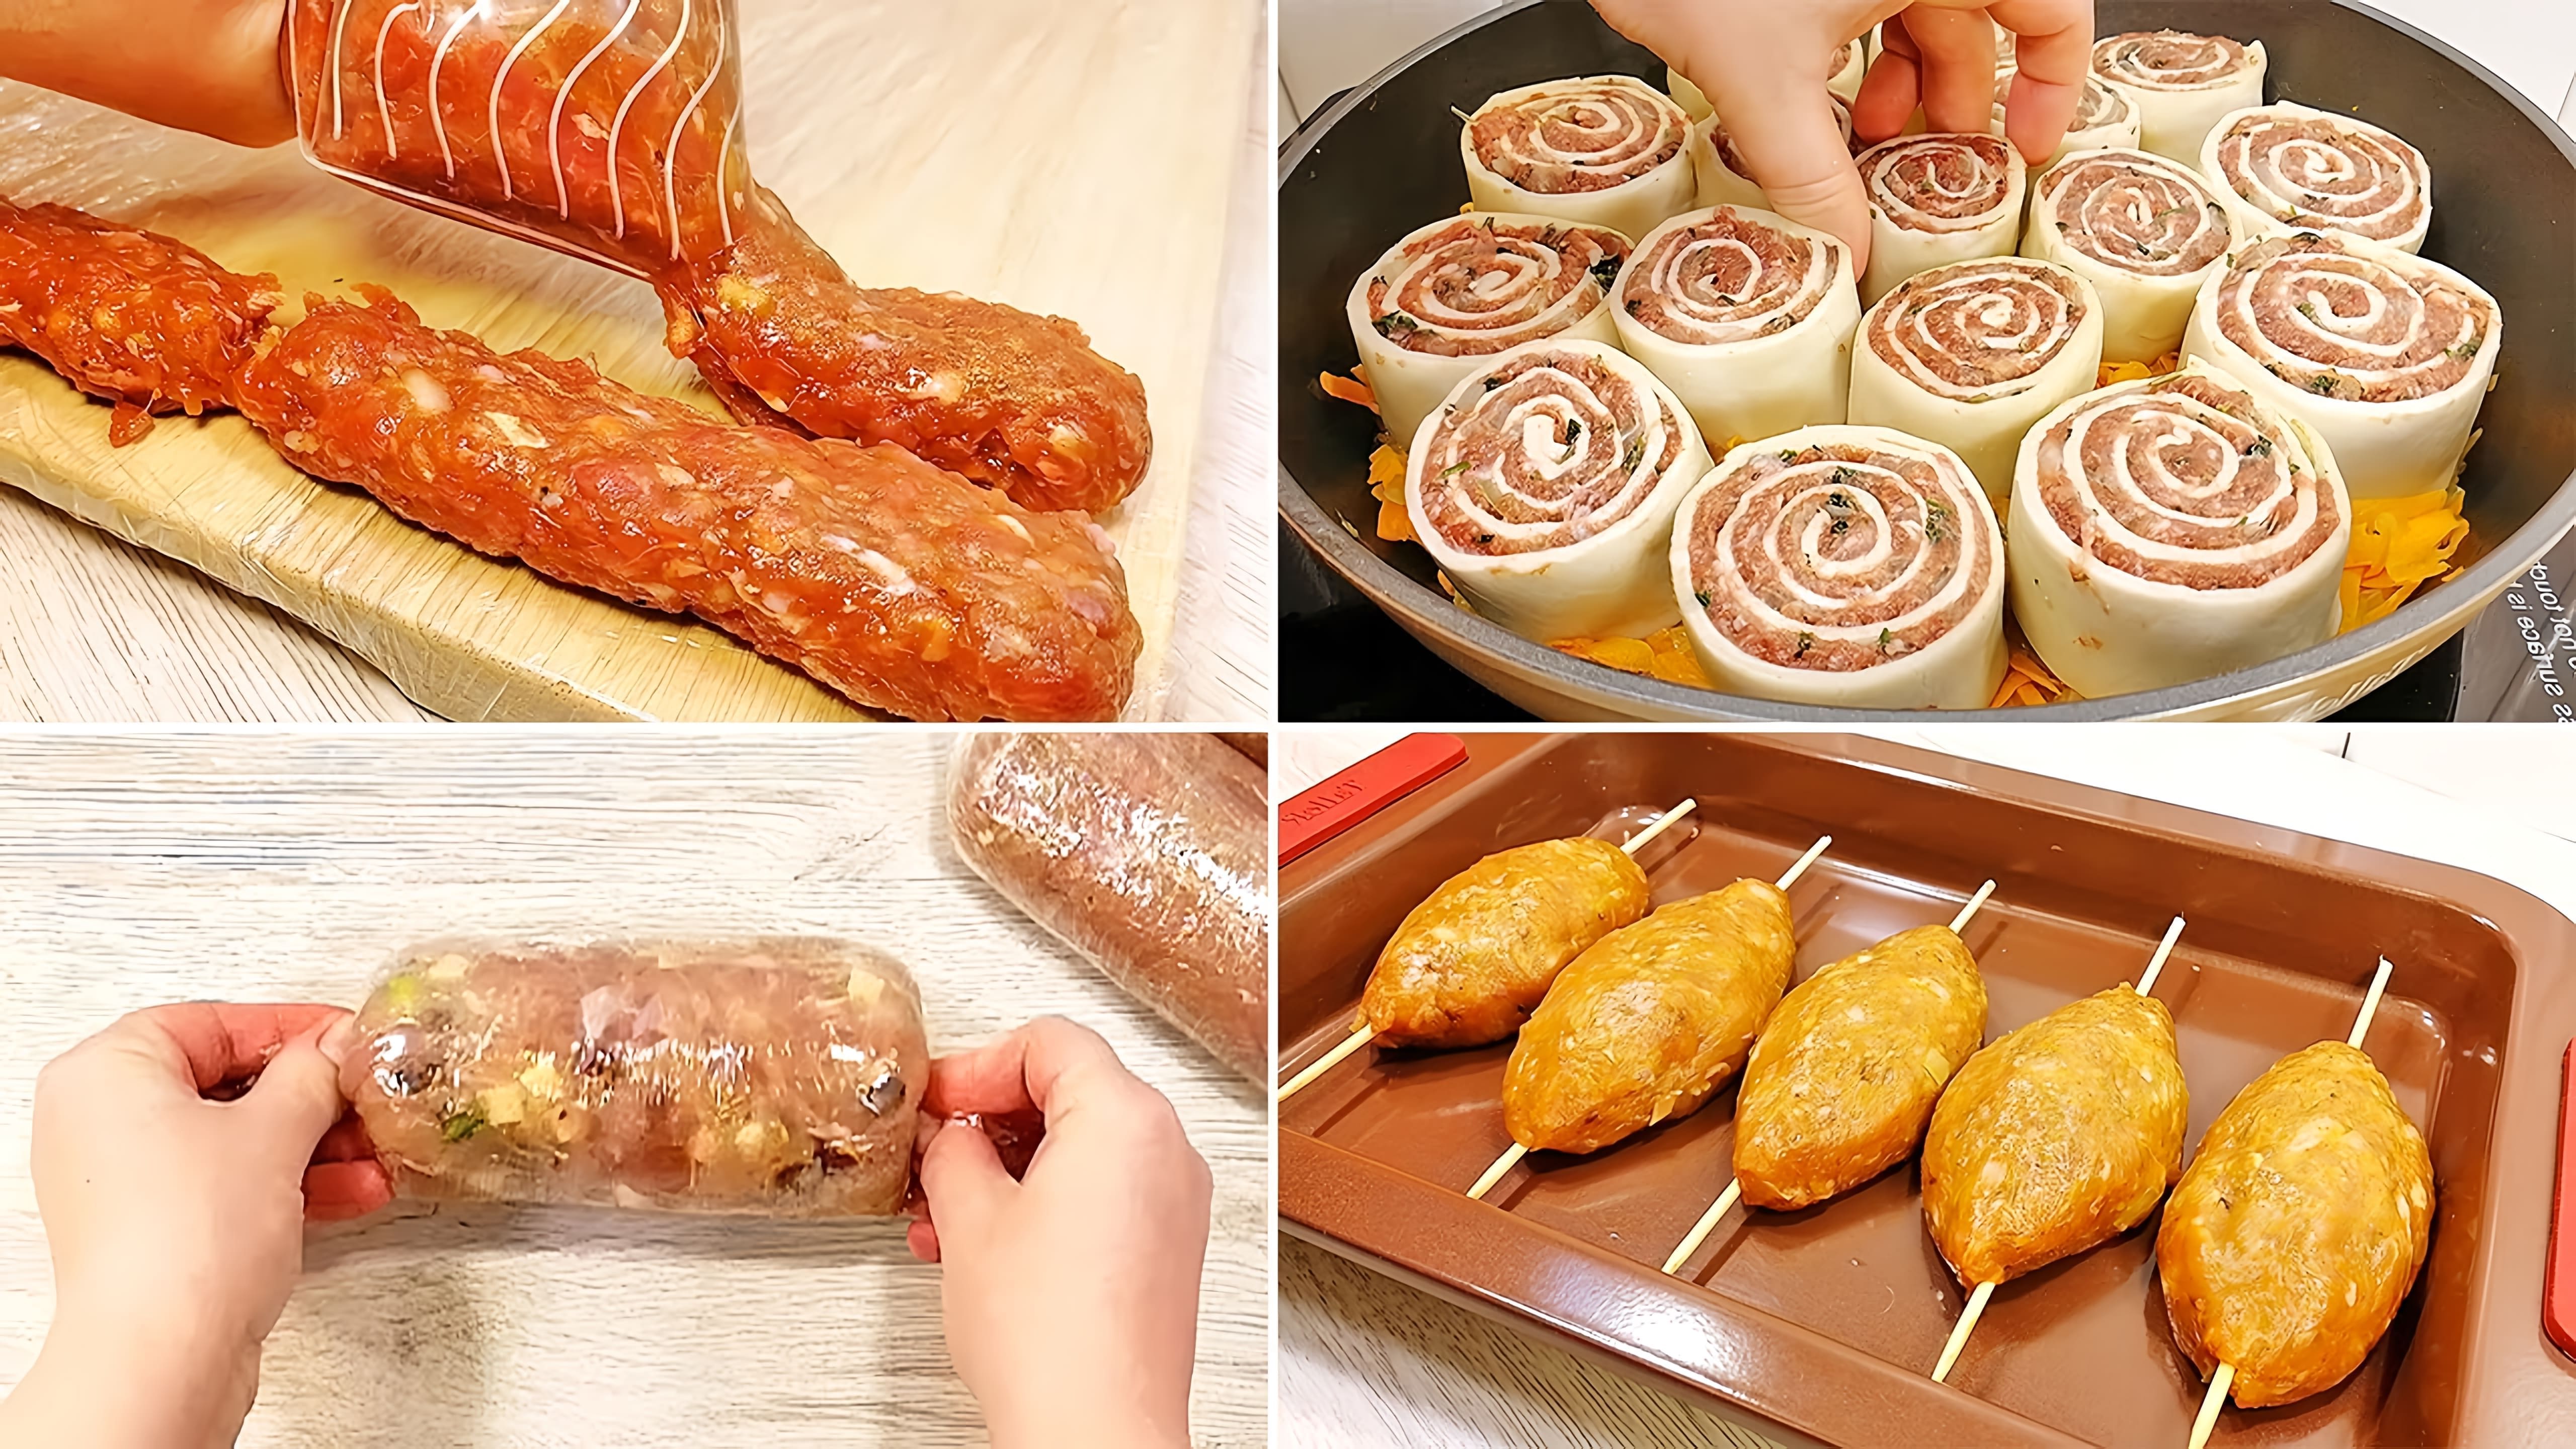 В этом видео показаны пять рецептов мясных блюд: фрикадельки, мясные рулеты, куриная колбаса и люля-кебаб